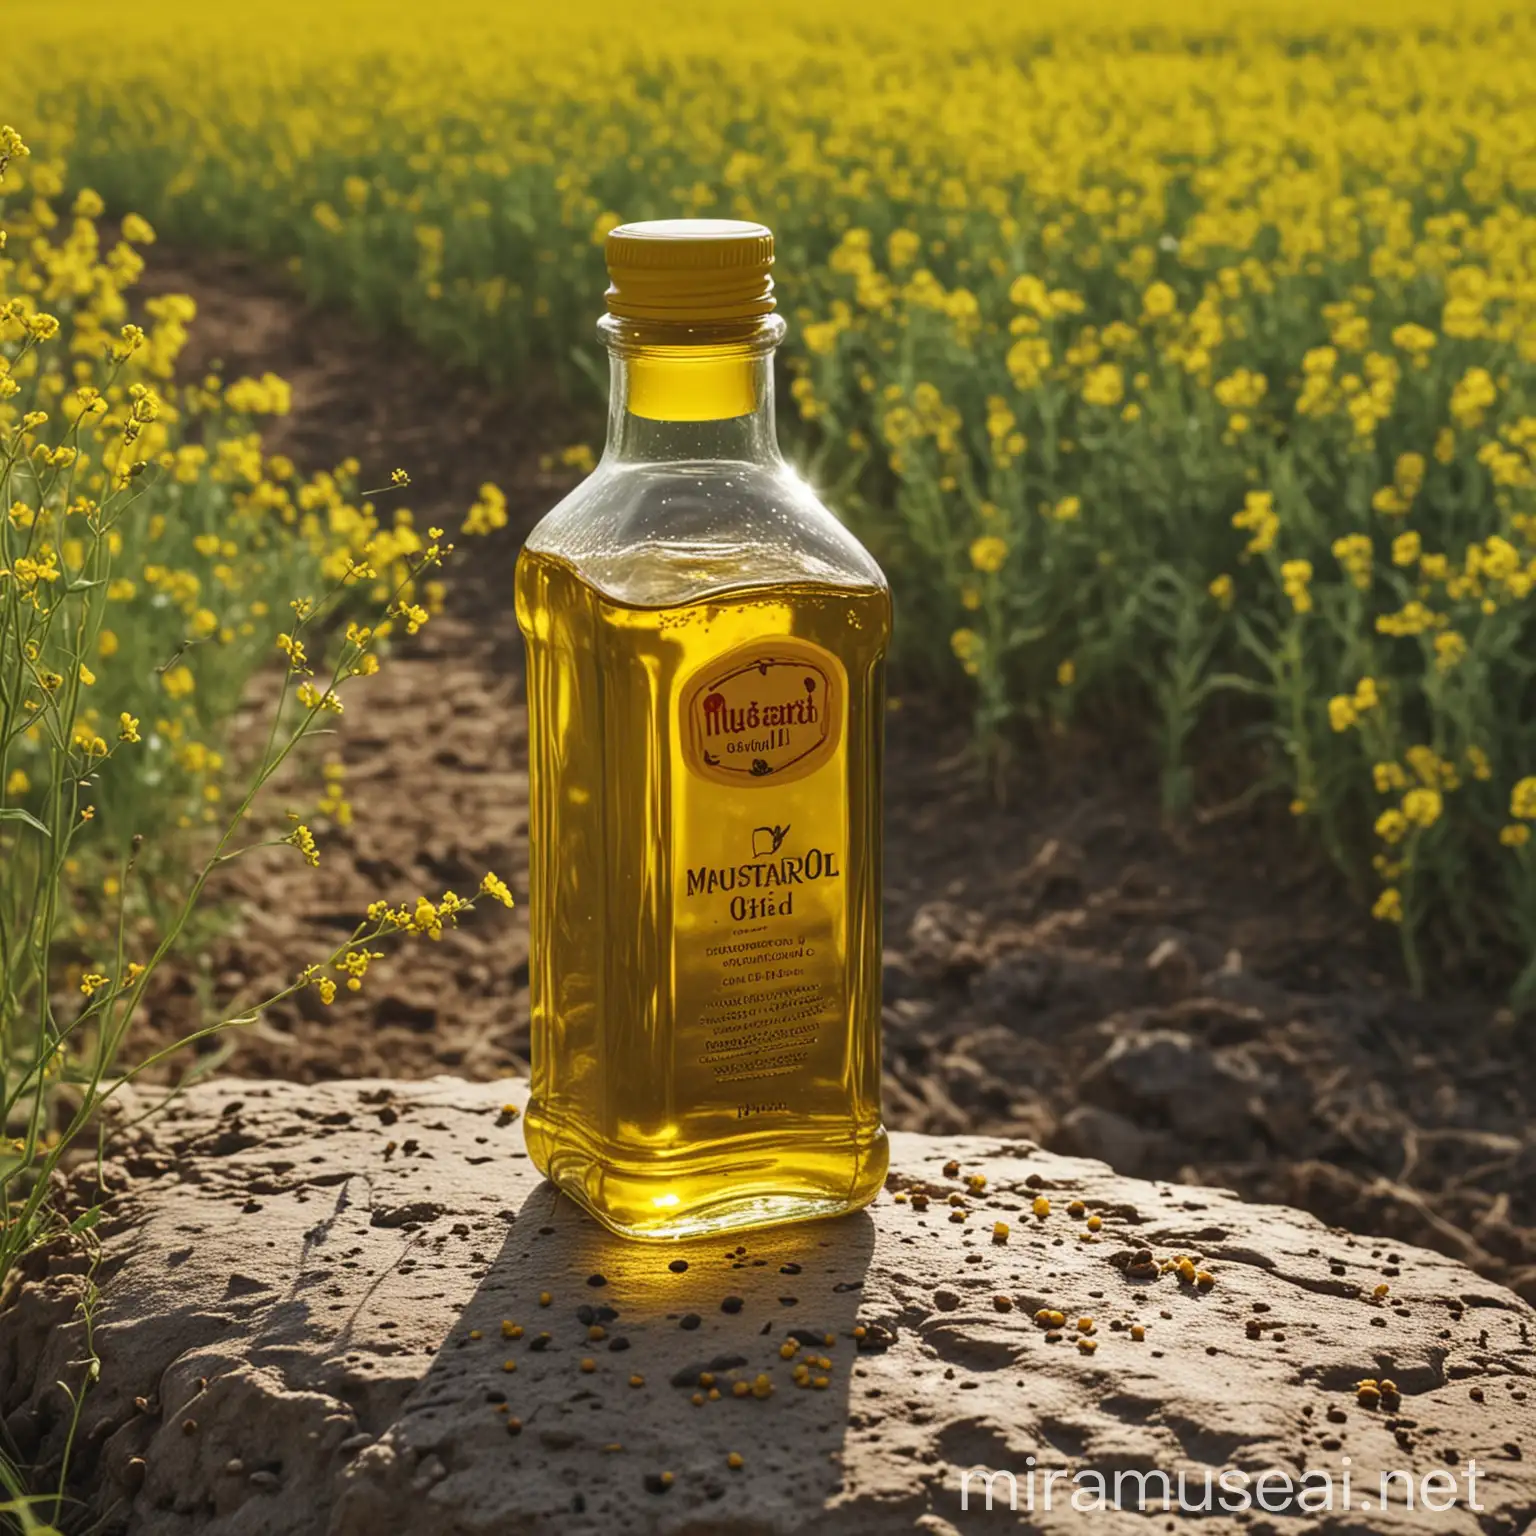 mustard oil mock up in mustard field, very creative . bottle on rock ,cinematic lightening, daylight, 8k